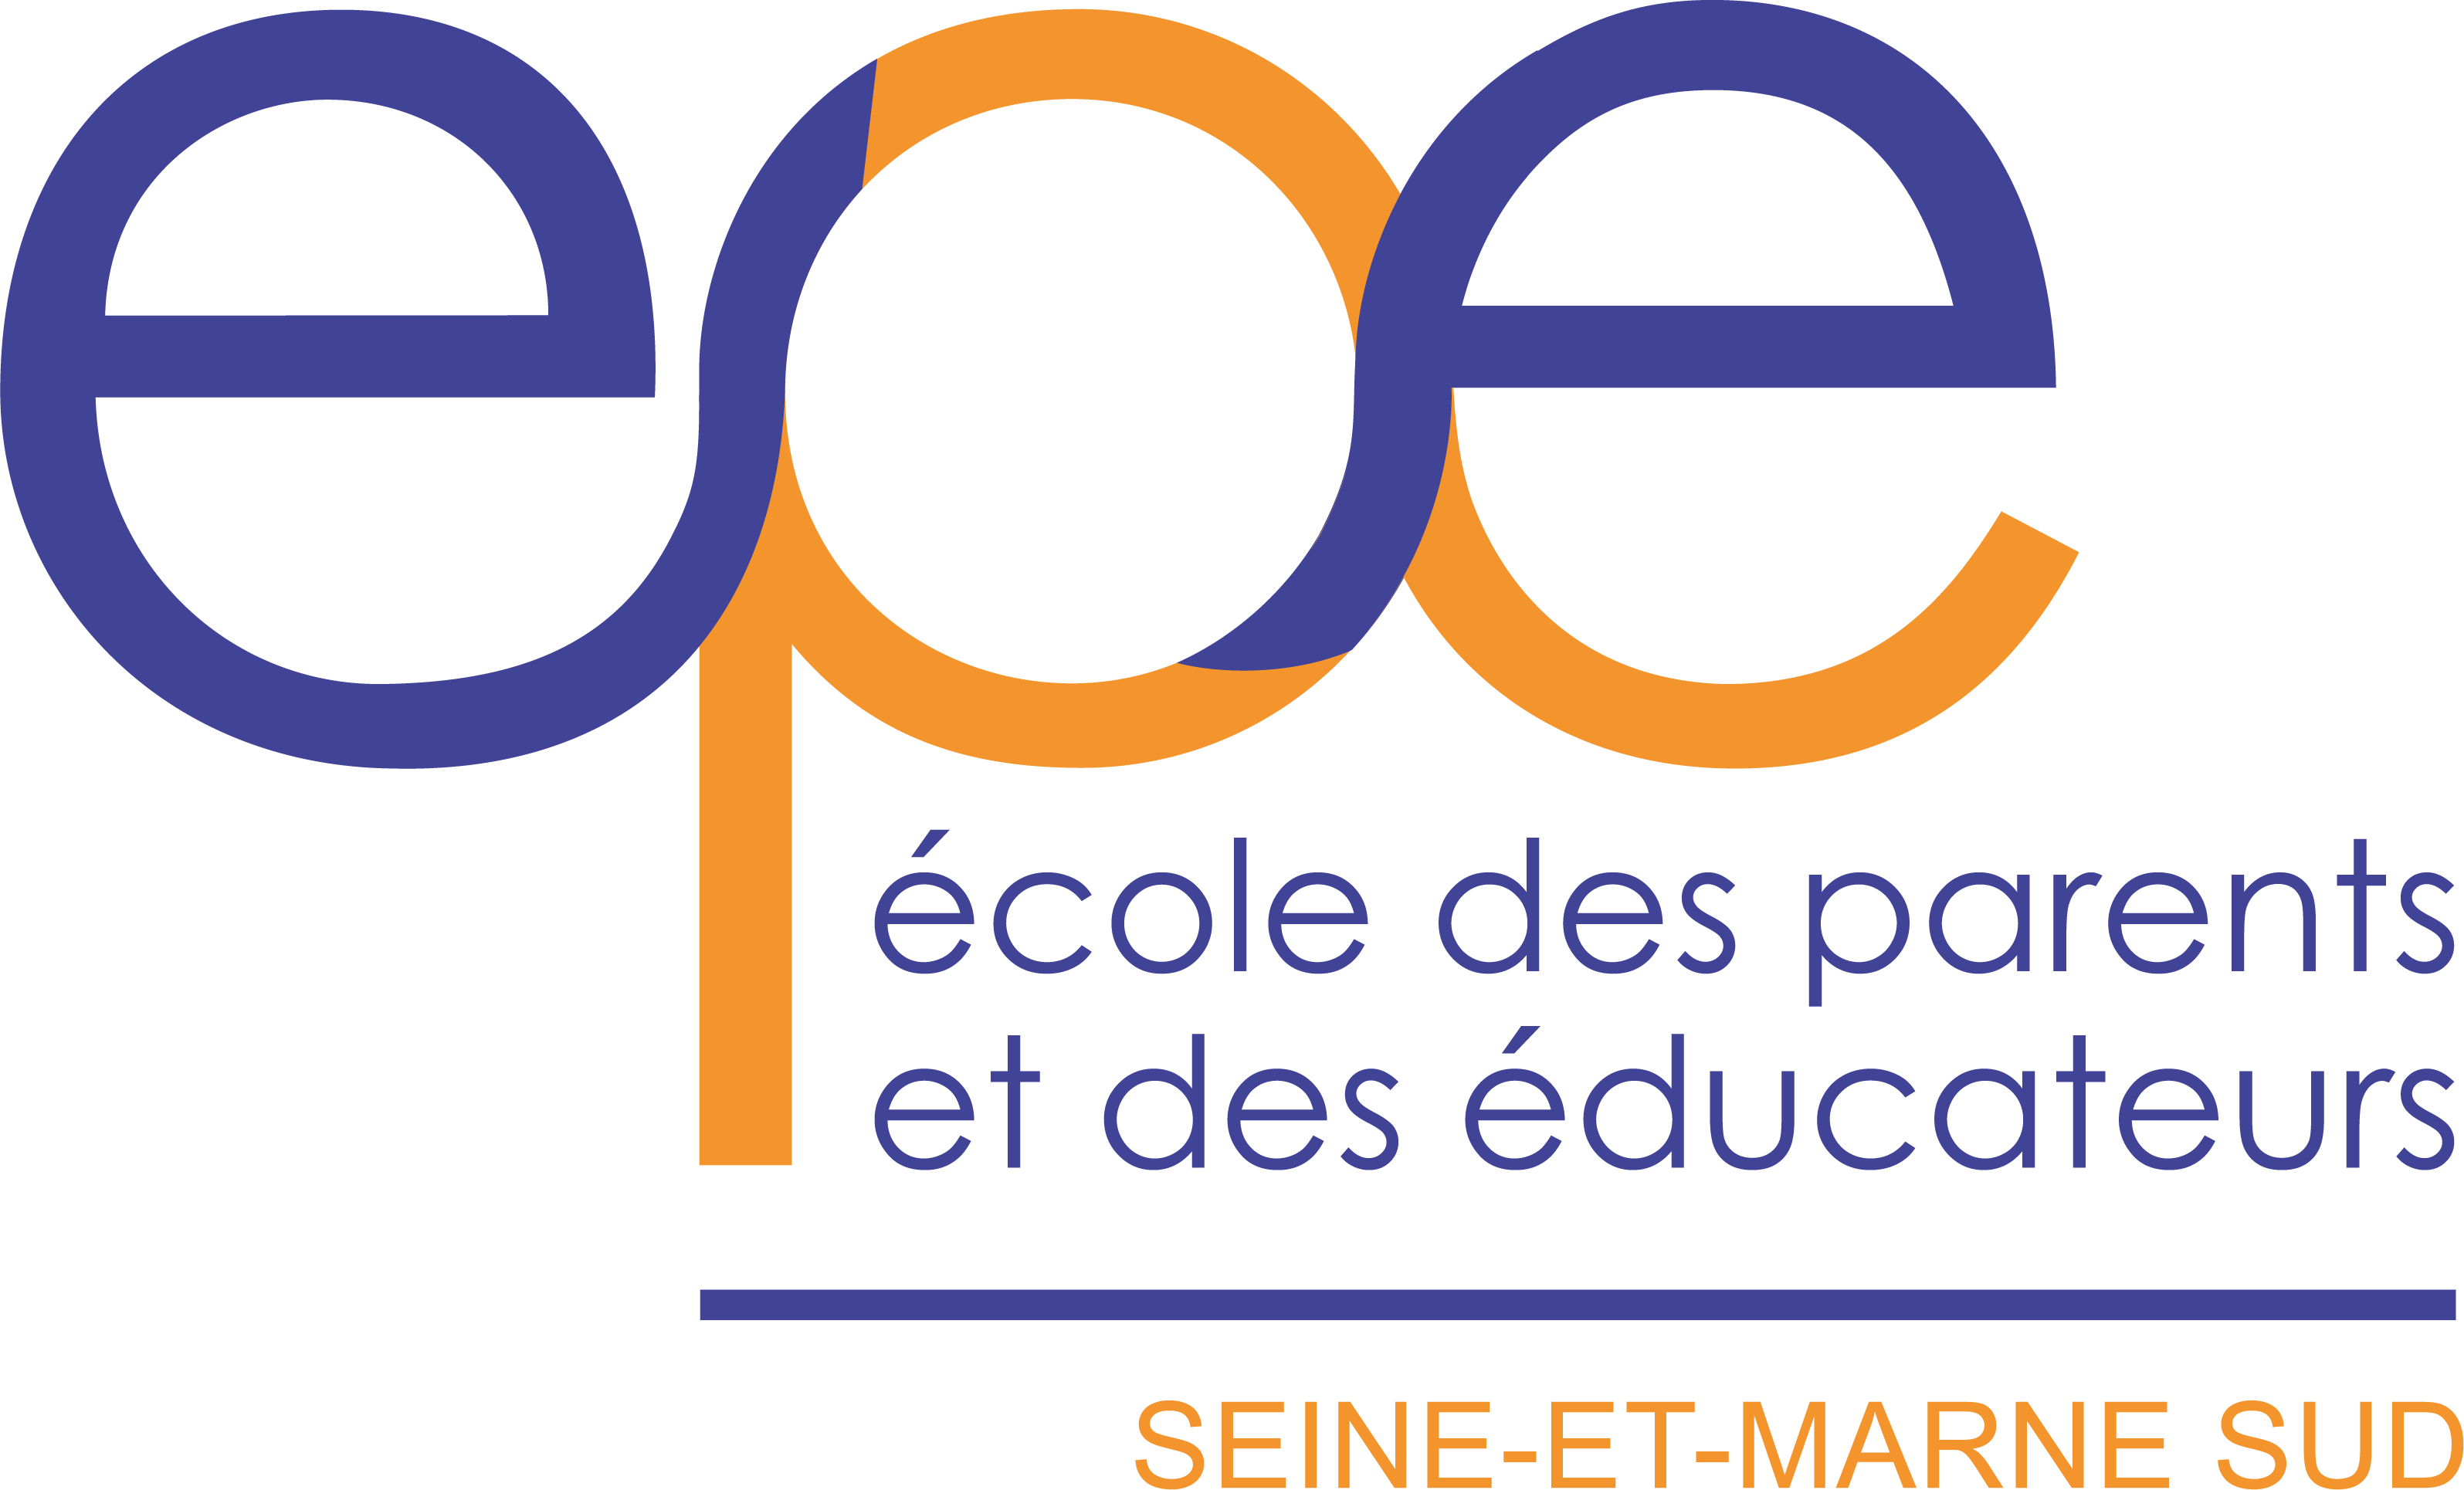 EPE de Seine-et-Marne Sud (77)